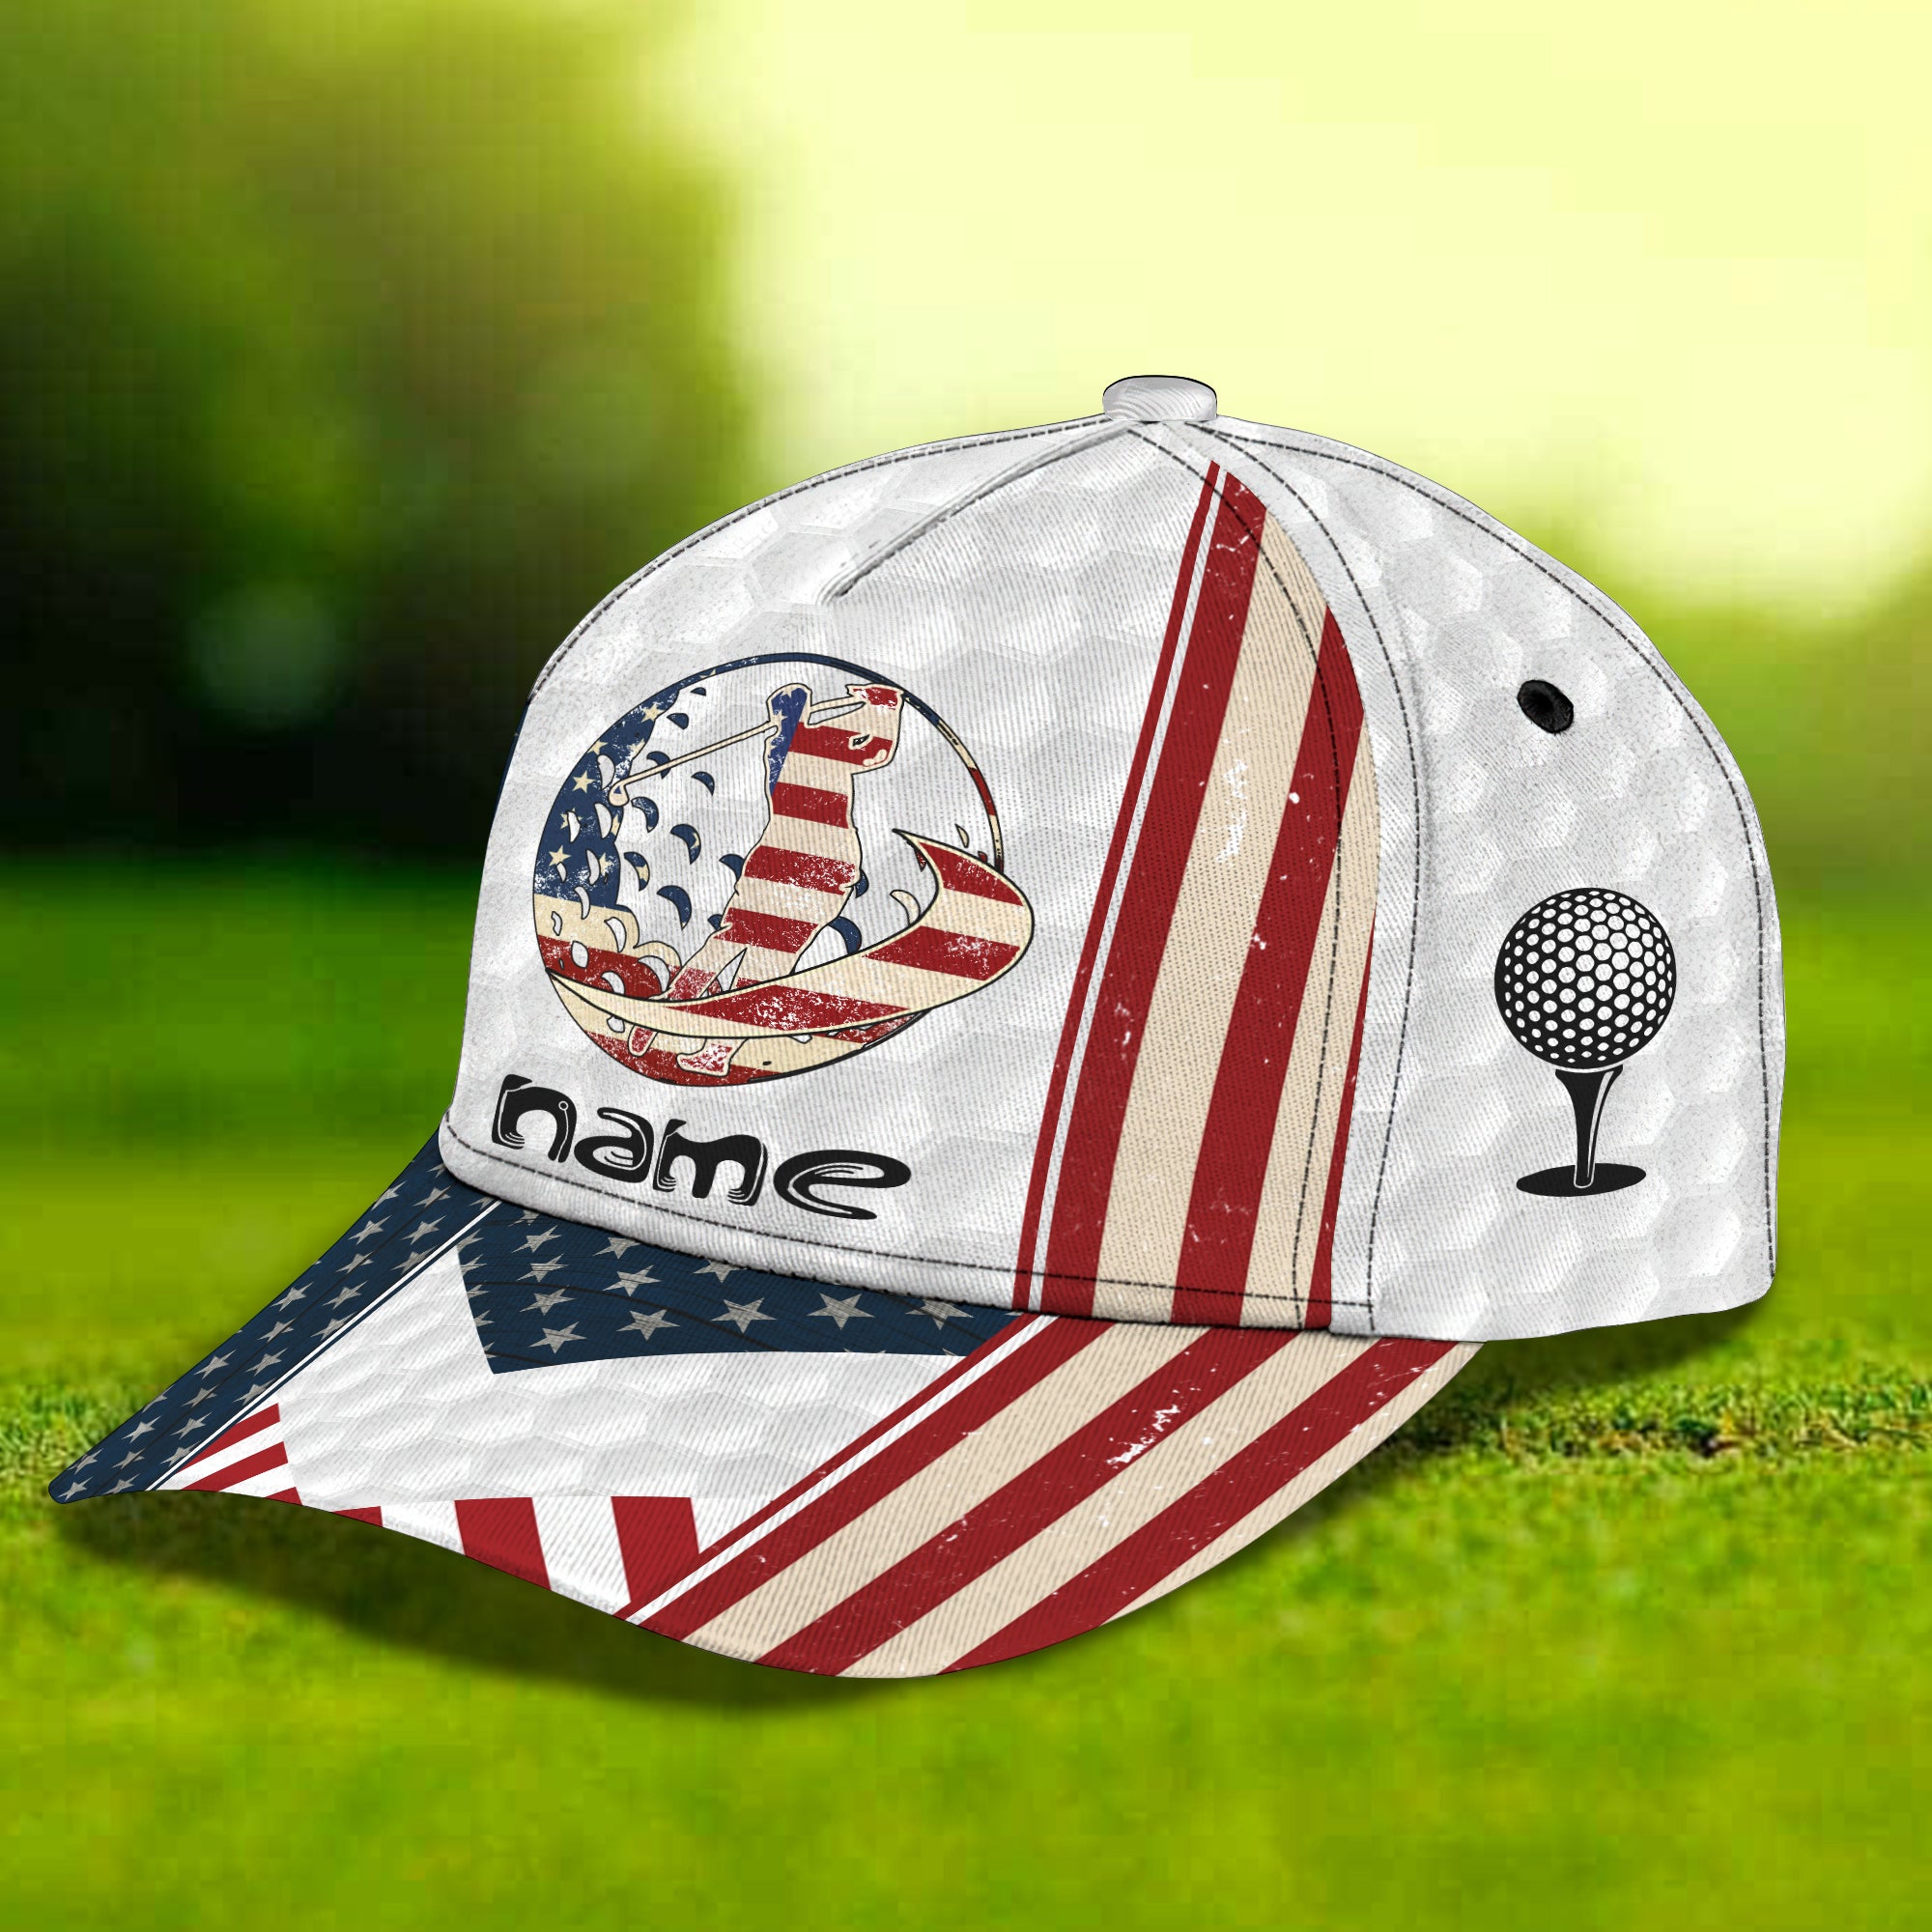 American Golfer (02) - Customize Cap - Ntp- 150